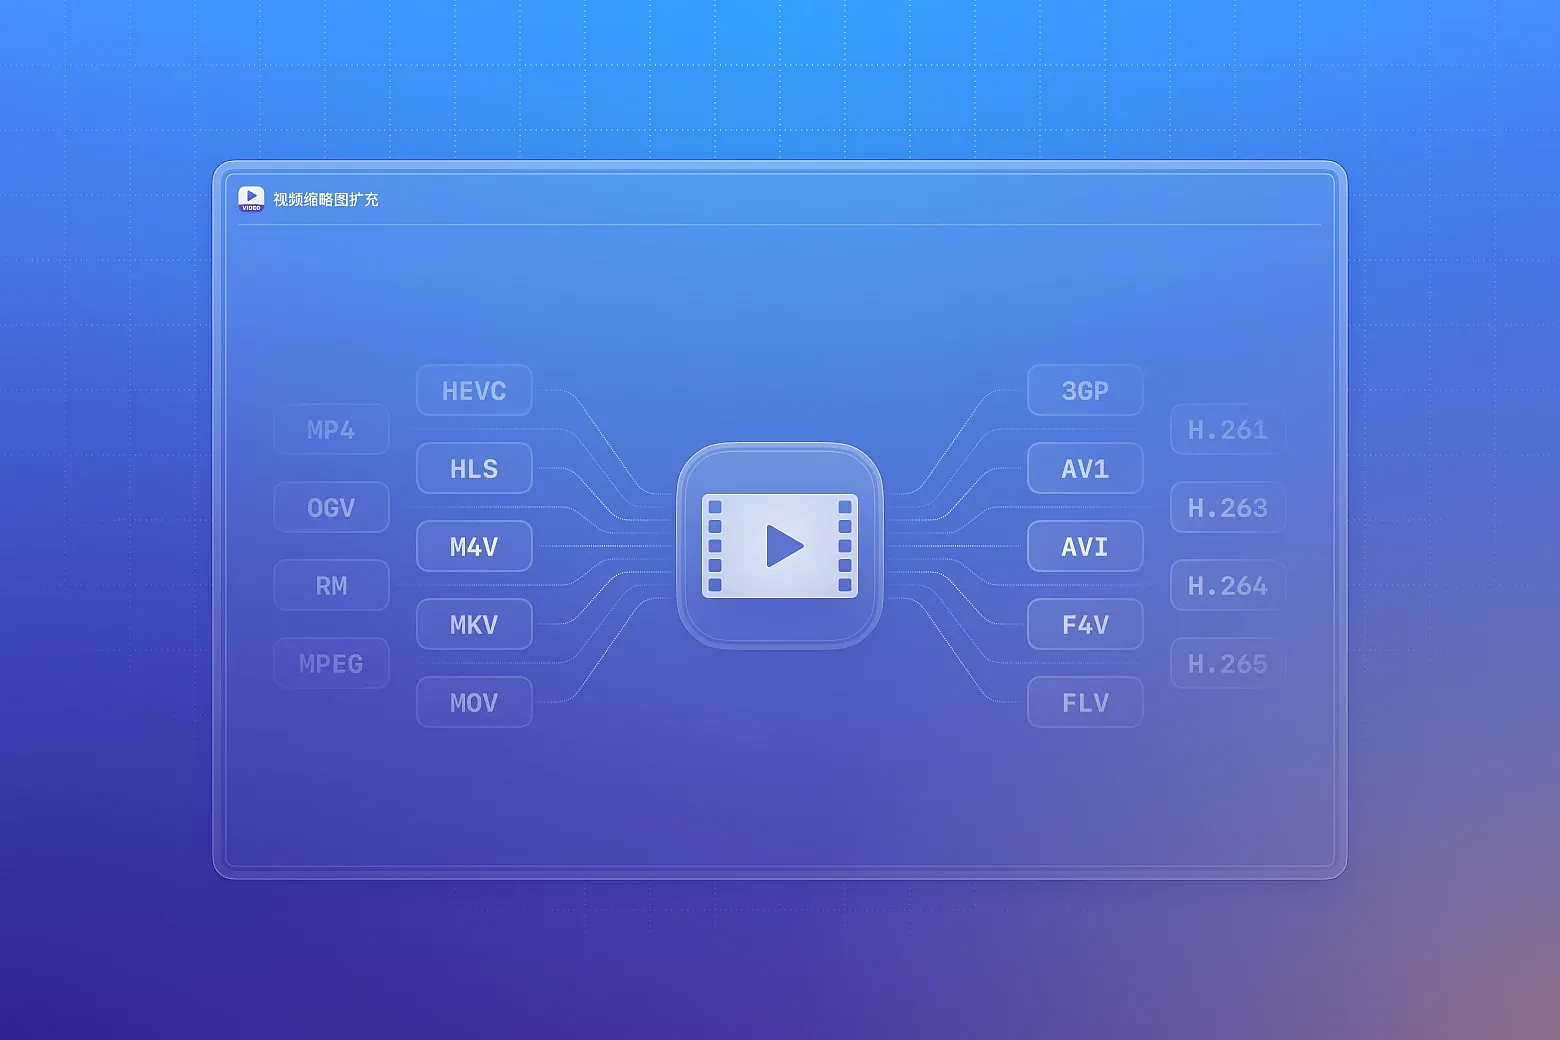 扩展 Eagle 支持的视频格式，支持 mp4、mkv、mov、avi、m4v、flv 等所有常见主流视频格式的缩略图生成。